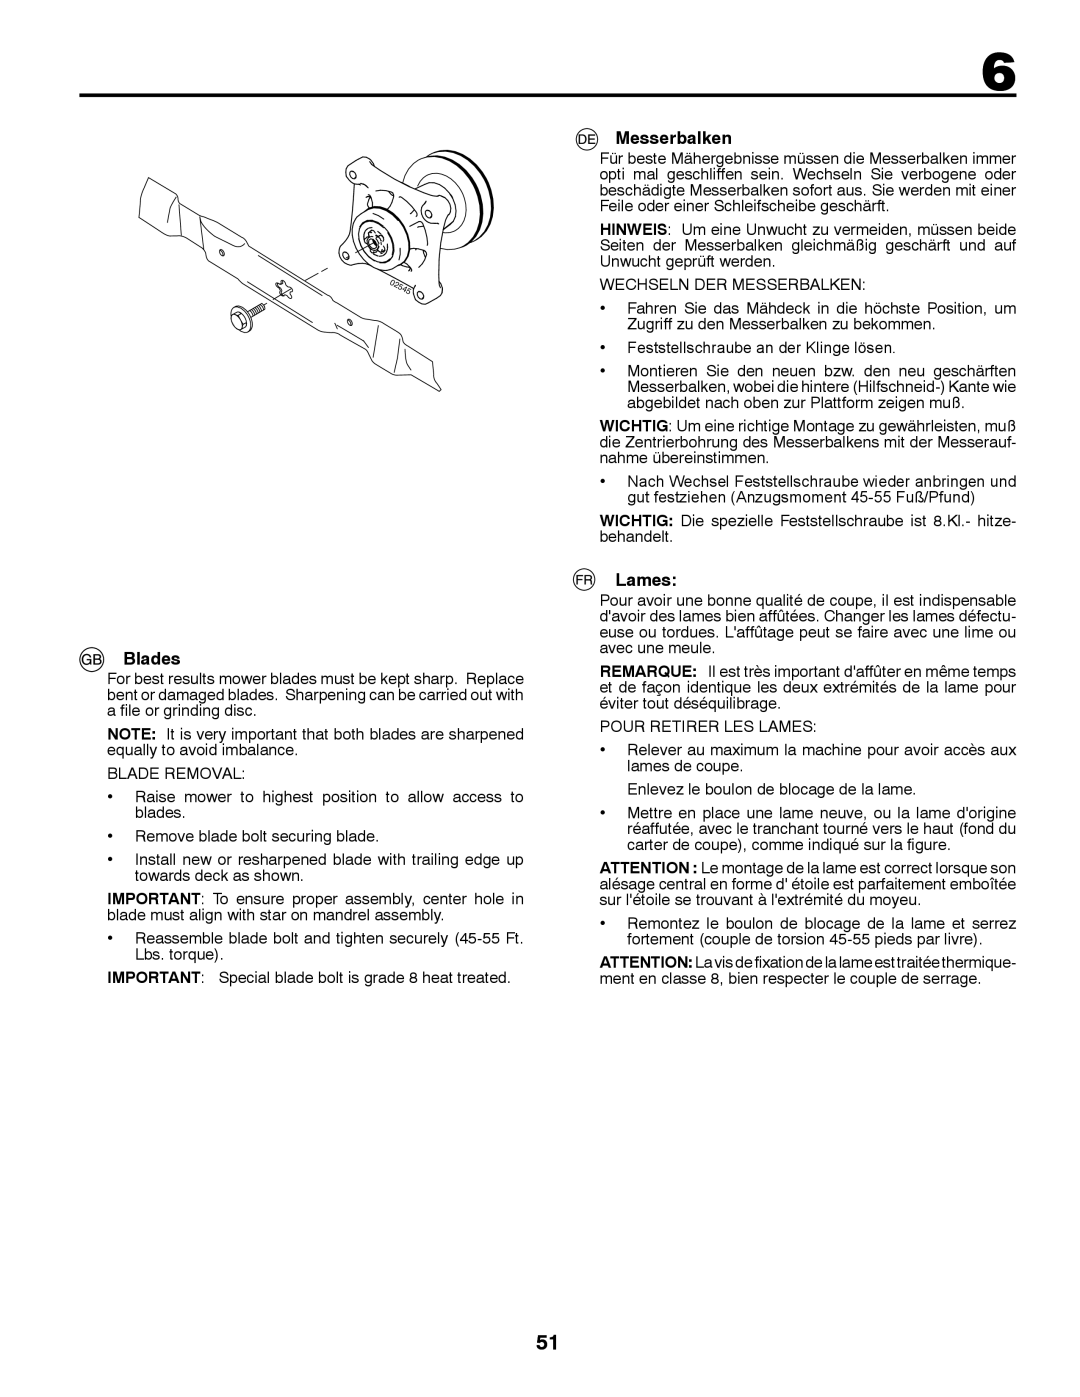 Husqvarna LT126 instruction manual Blades, Messerbalken, Lames 